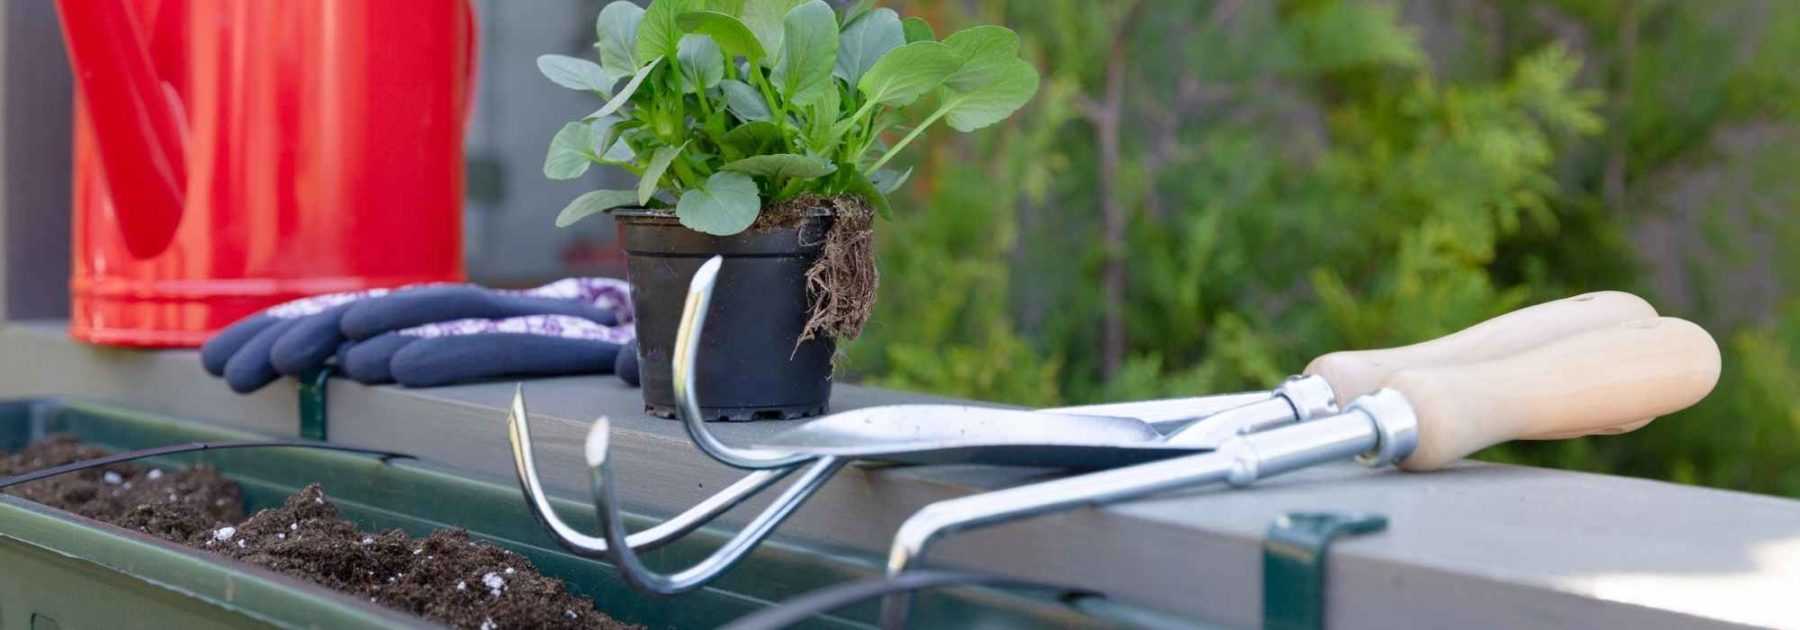 Paillages plantes : Entretien des plantes et balcon terrasse